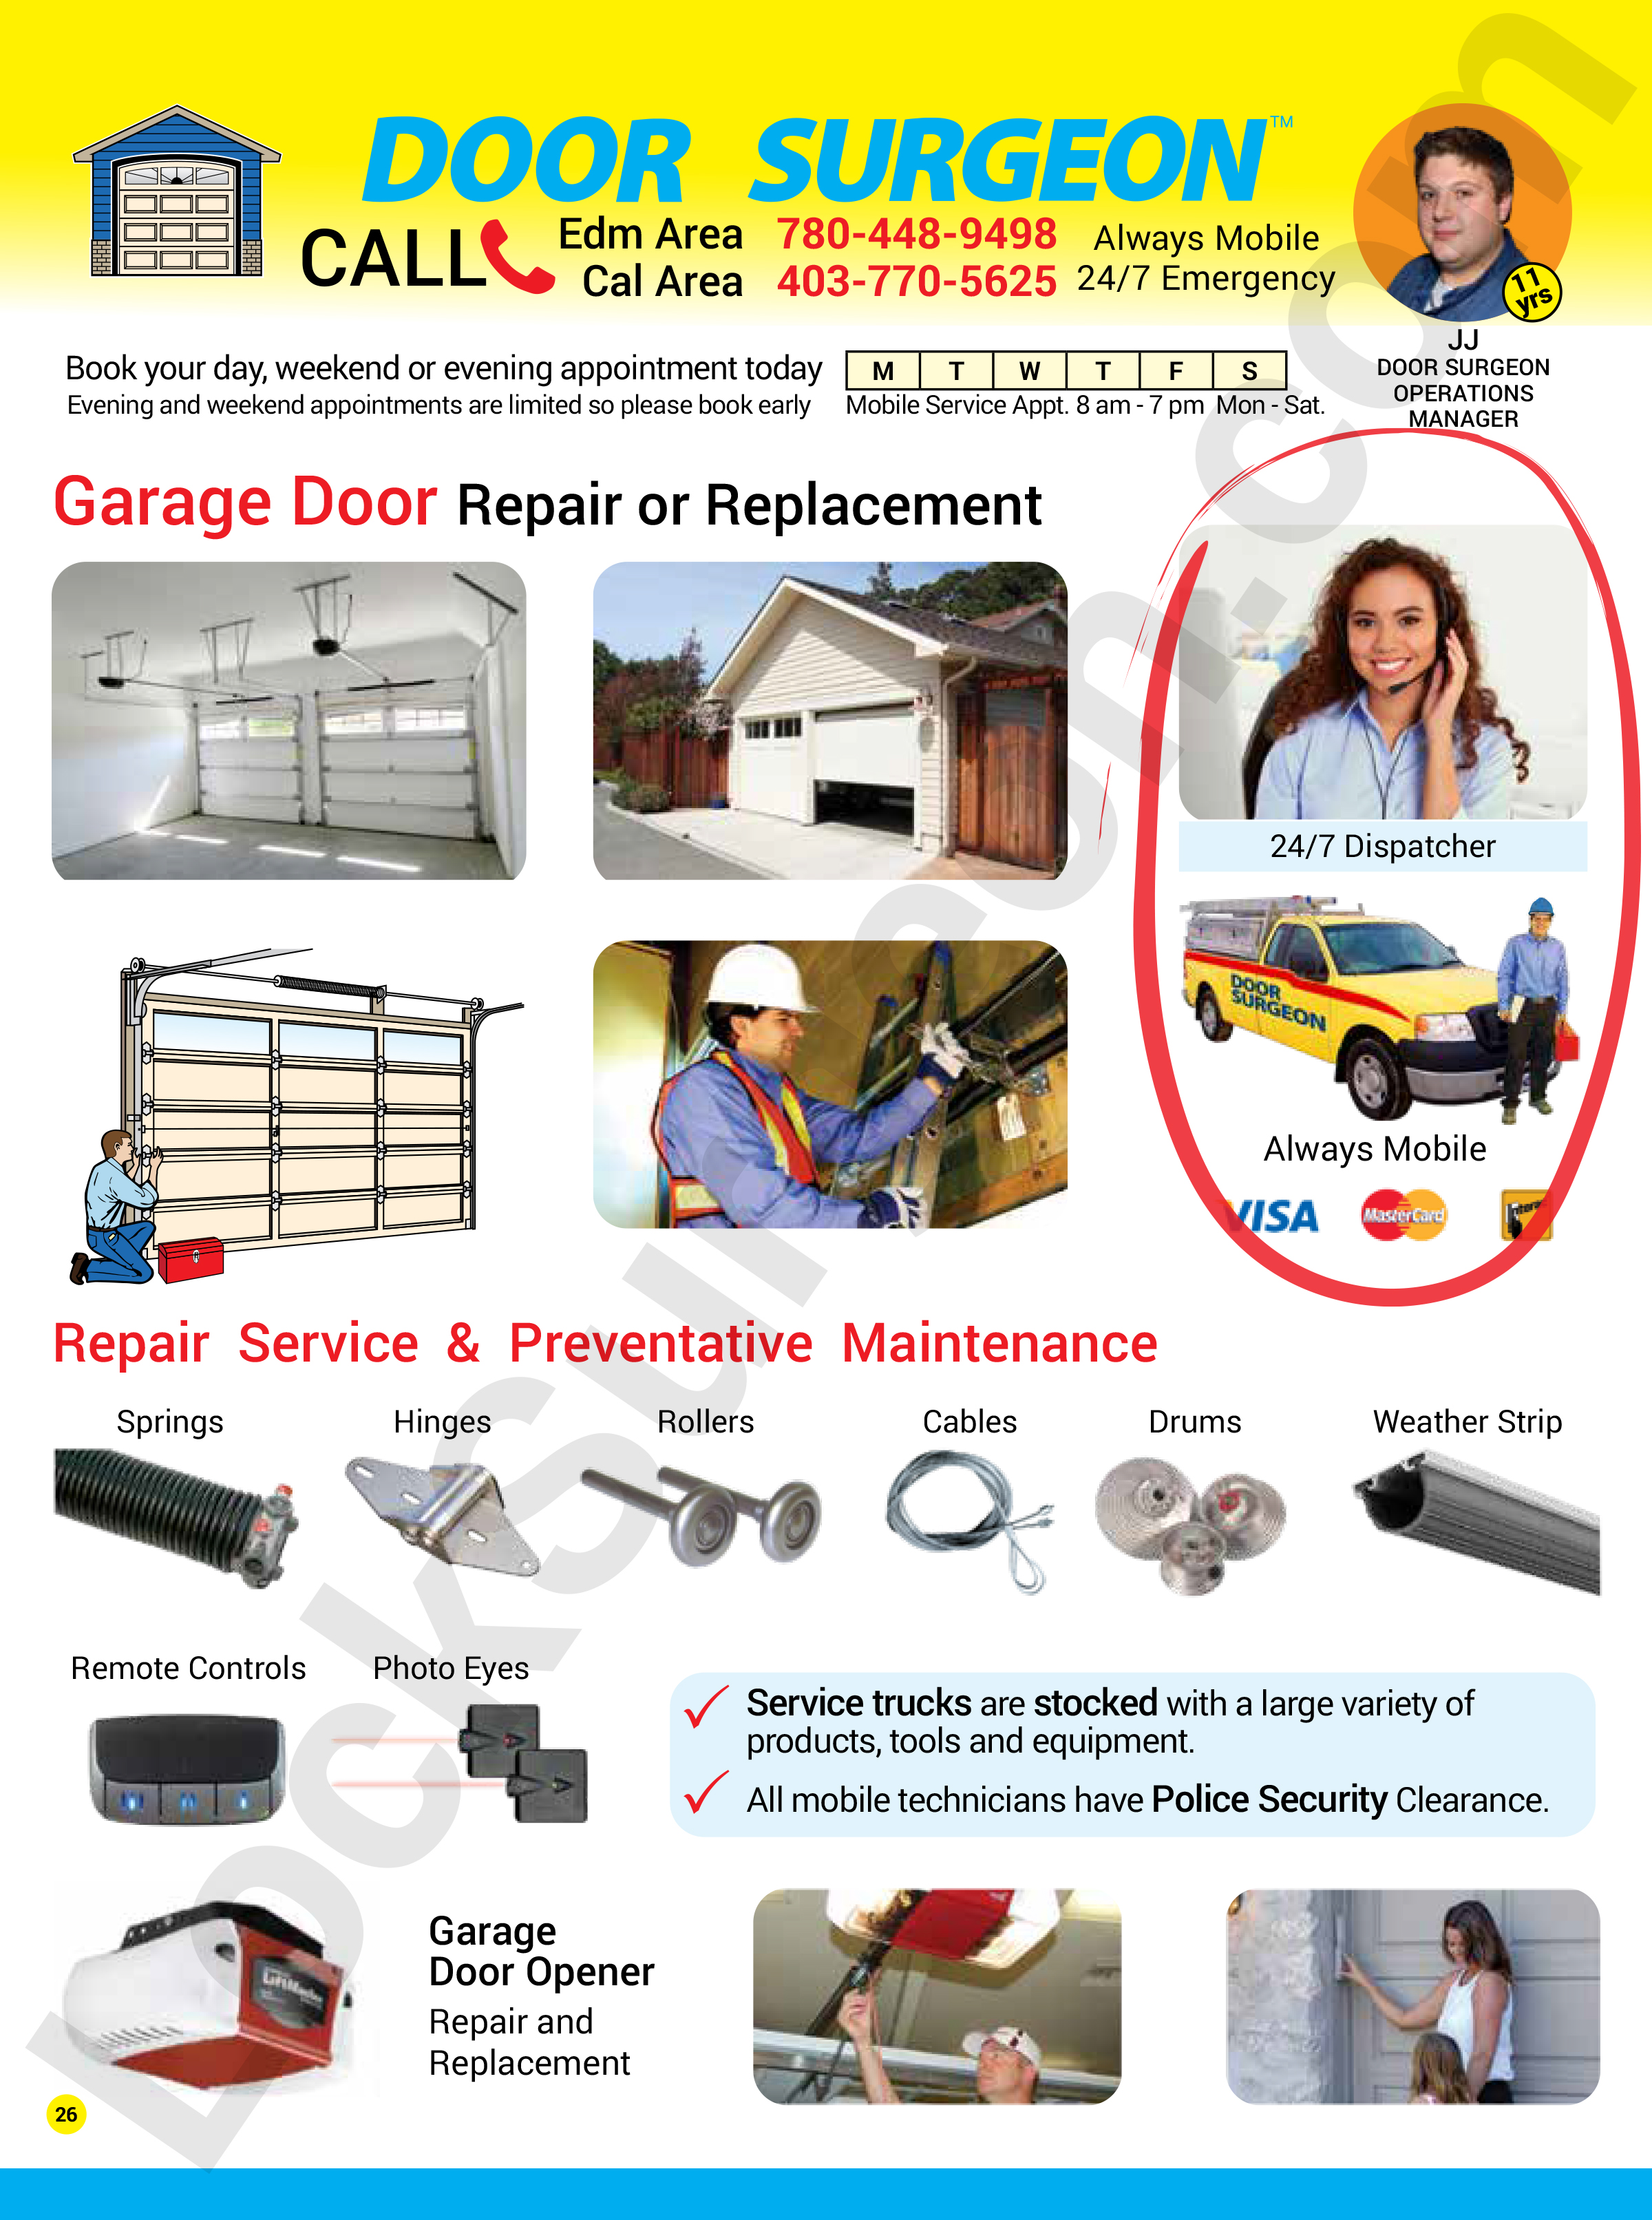 Lock Surgeon garage door repair replacement services by professional expert garage door technicians.